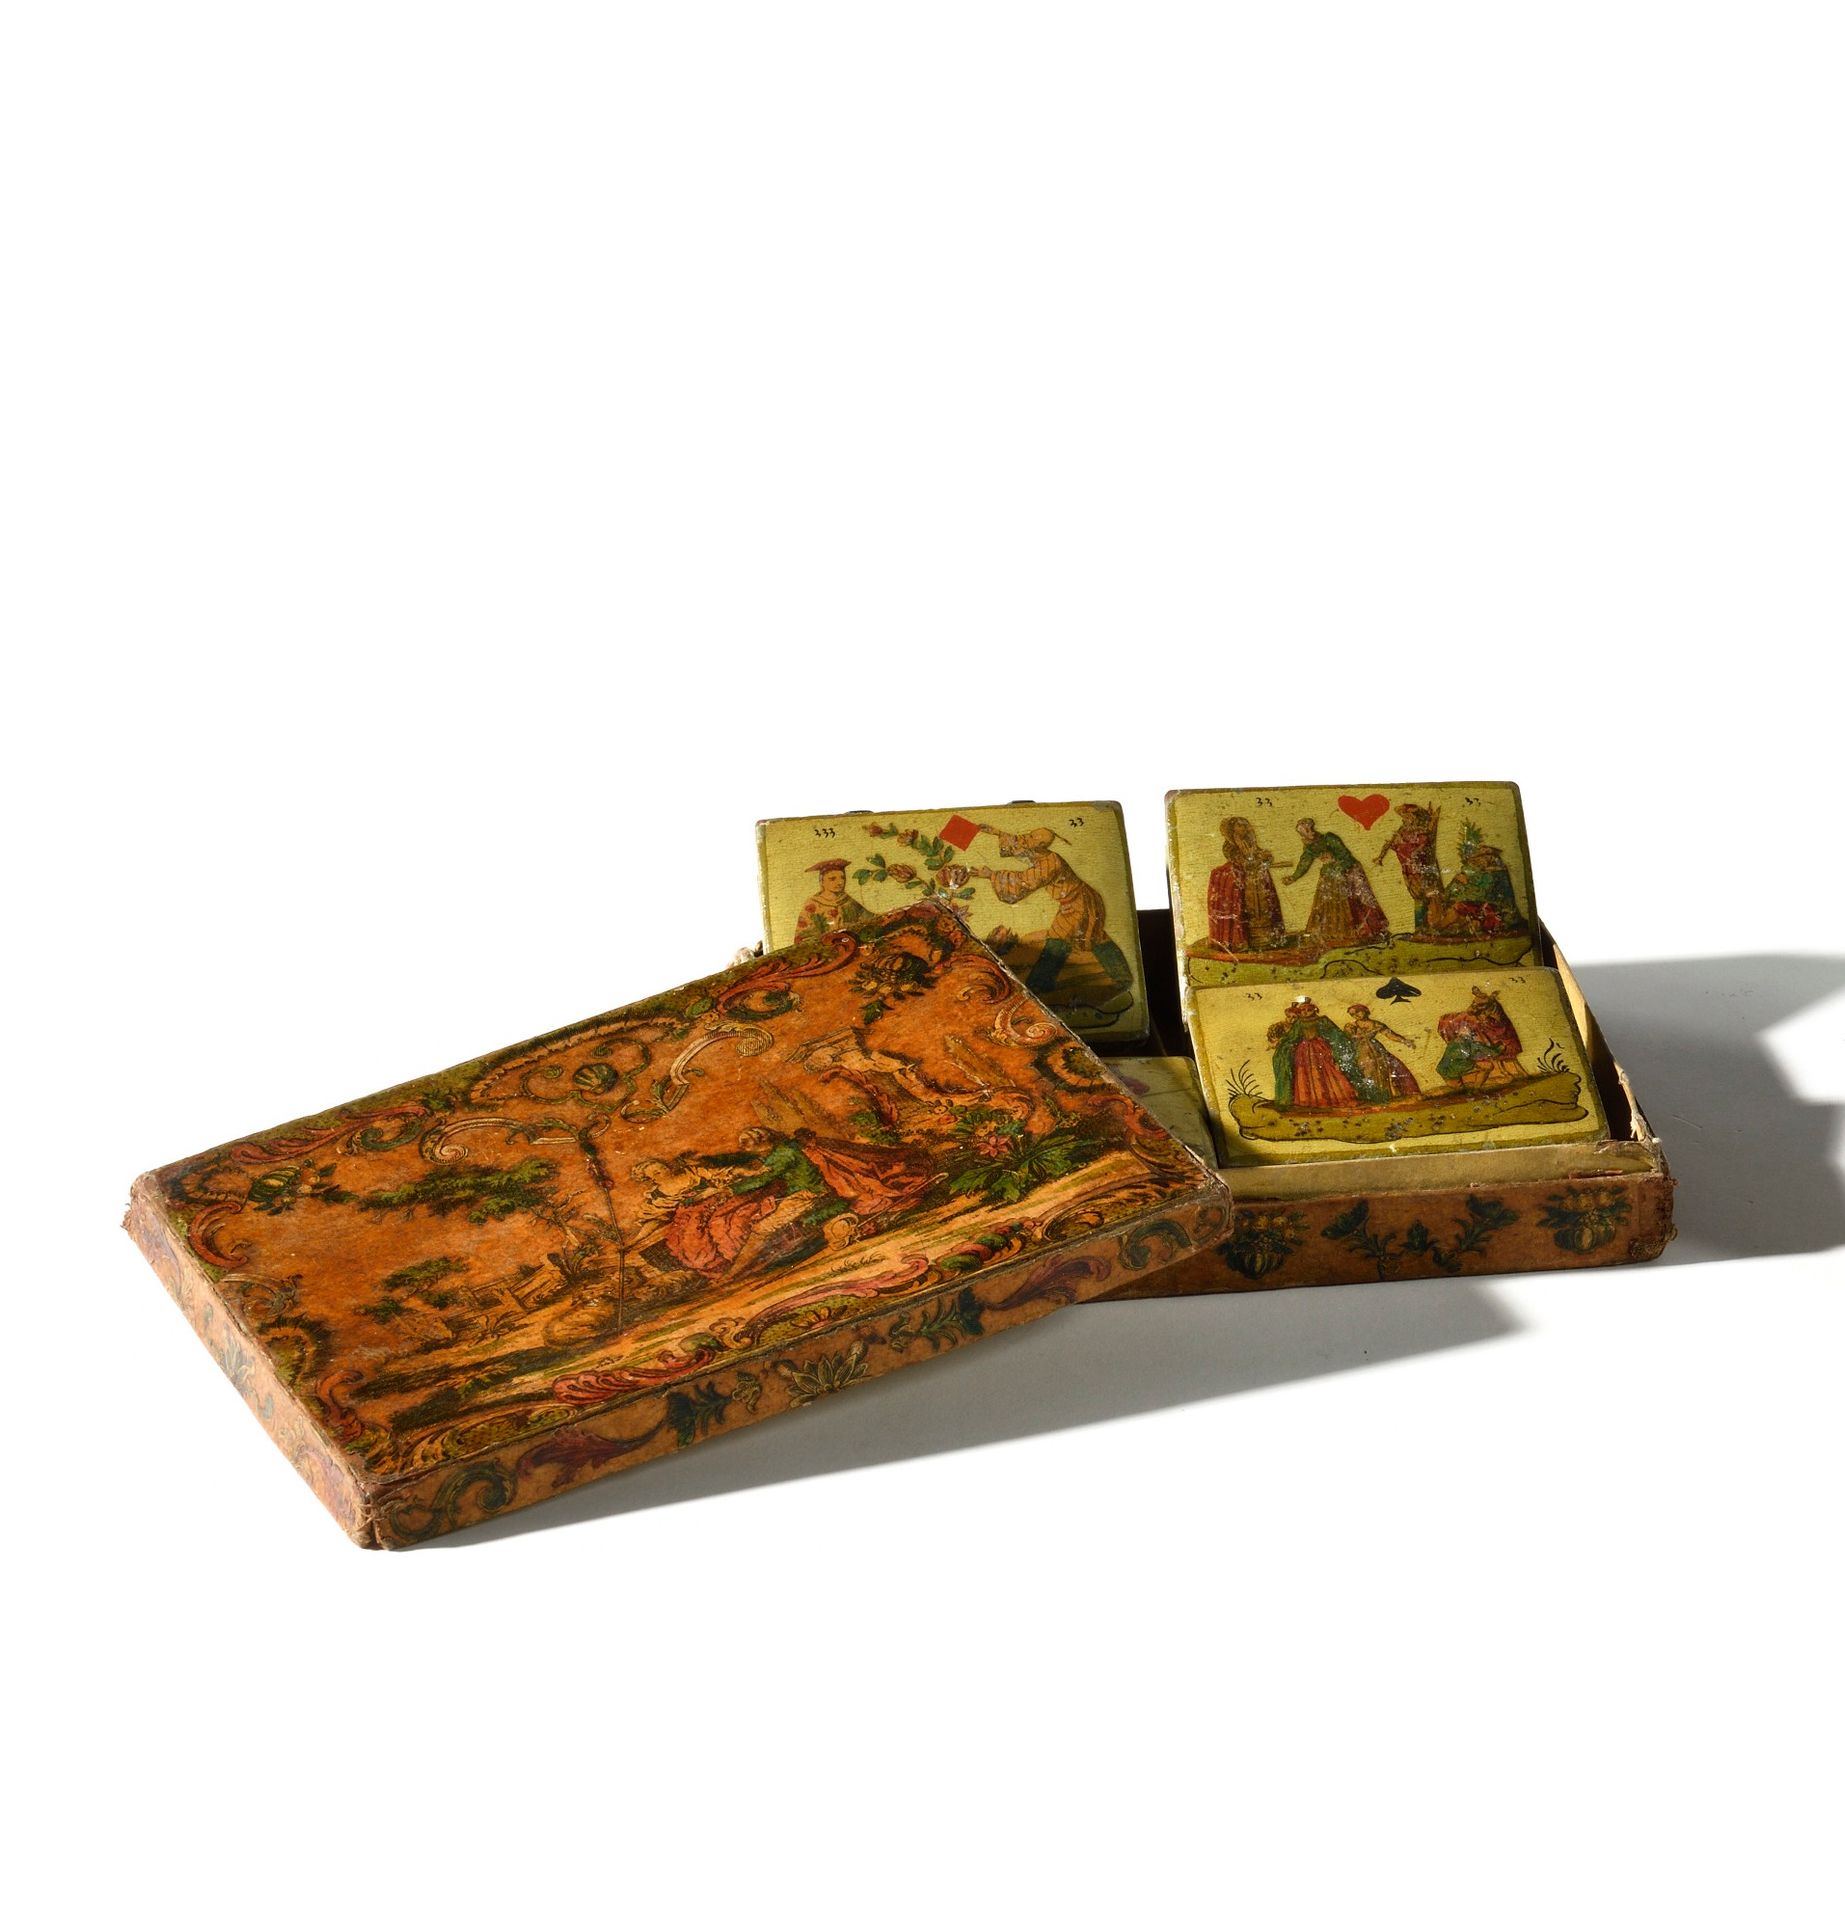 Null 四方游戏盒
用纸板制成，装饰有各种人物动画场景。盒内有四个上漆的木盒。 
制作于十八世纪。
高：3.5 厘米；宽：18.5 厘米；深：13 厘米
磨损